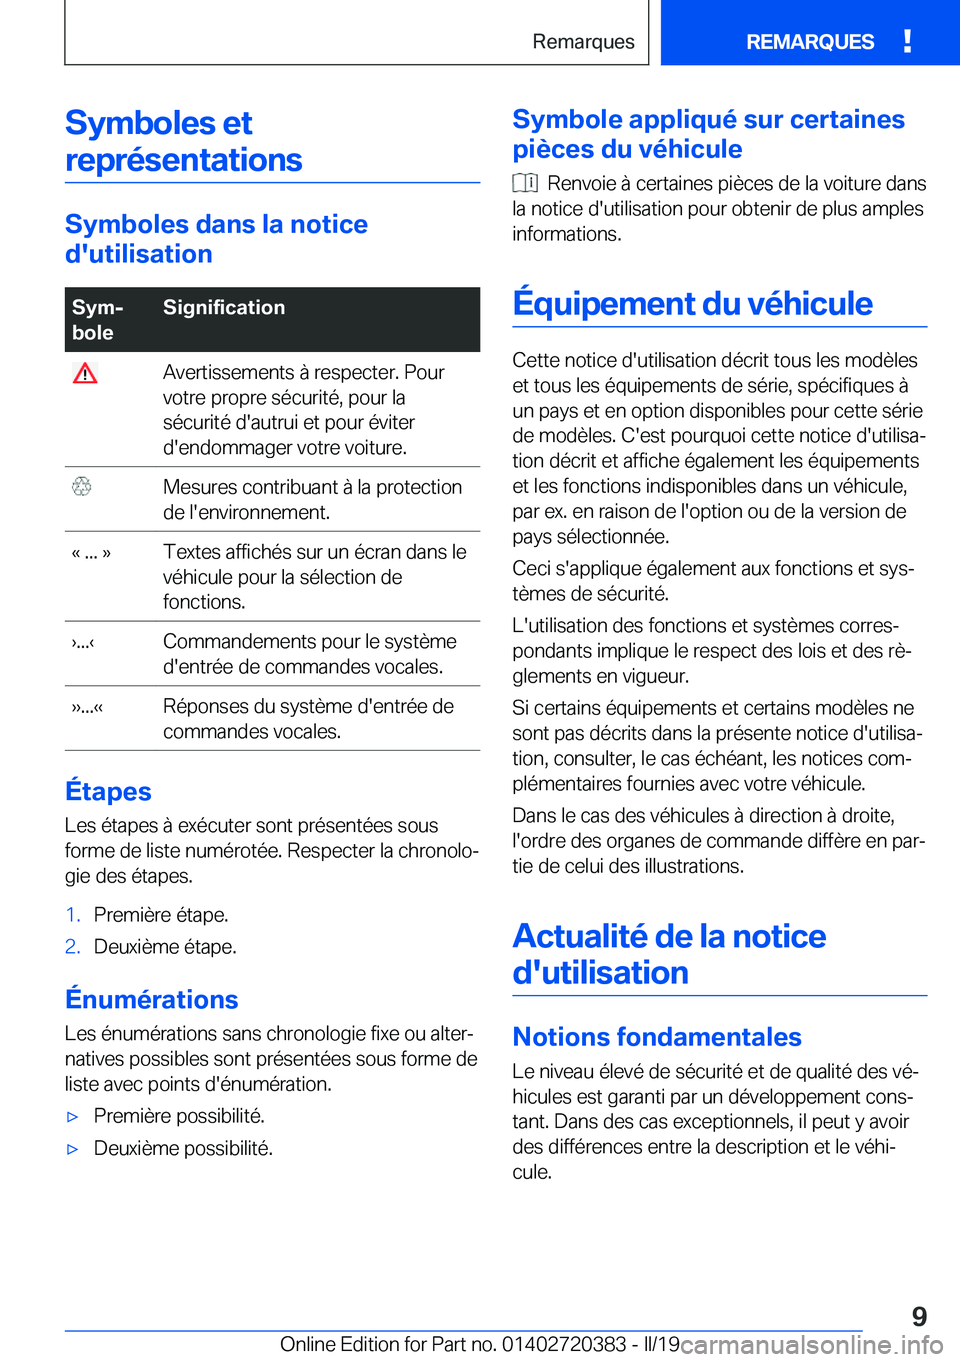 BMW X2 2019  Notices Demploi (in French) �S�y�m�b�o�l�e�s��e�t�r�e�p�r�é�s�e�n�t�a�t�i�o�n�s
�S�y�m�b�o�l�e�s��d�a�n�s��l�a��n�o�t�i�c�e
�d�'�u�t�i�l�i�s�a�t�i�o�n
�S�y�mj
�b�o�l�e�S�i�g�n�i�f�i�c�a�t�i�o�n��A�v�e�r�t�i�s�s�e�m�e�